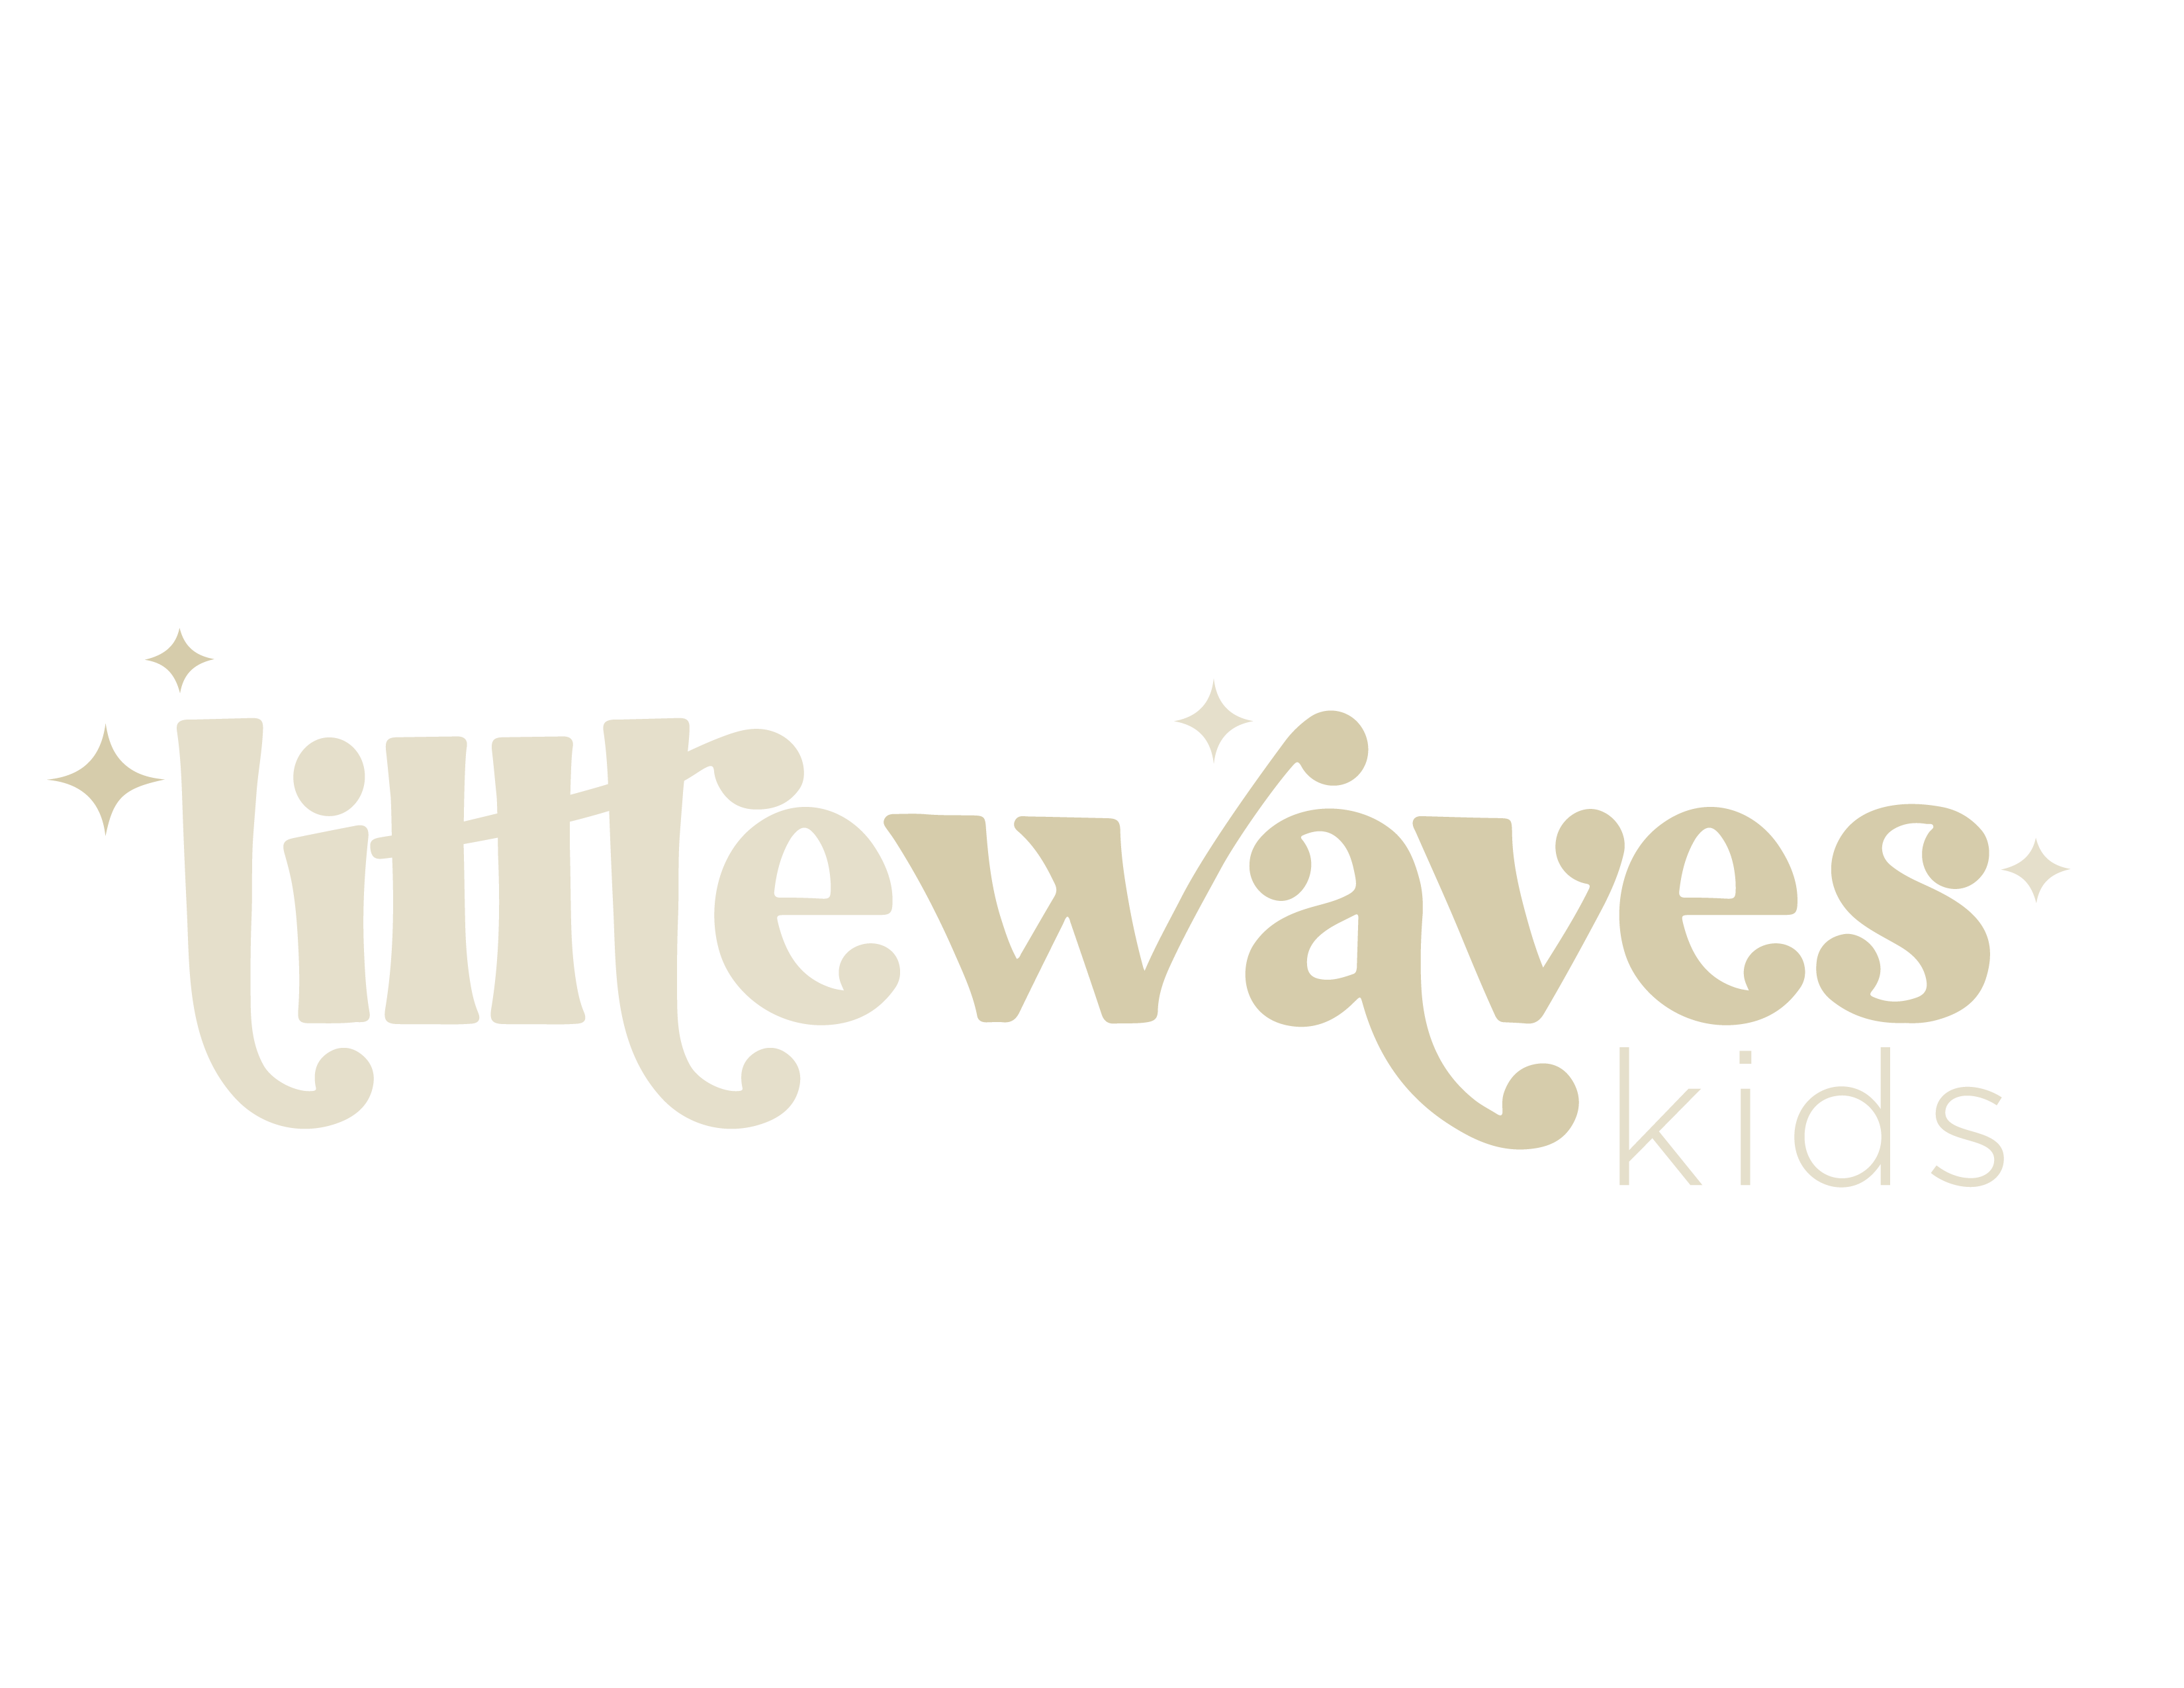 Little Waves Kids